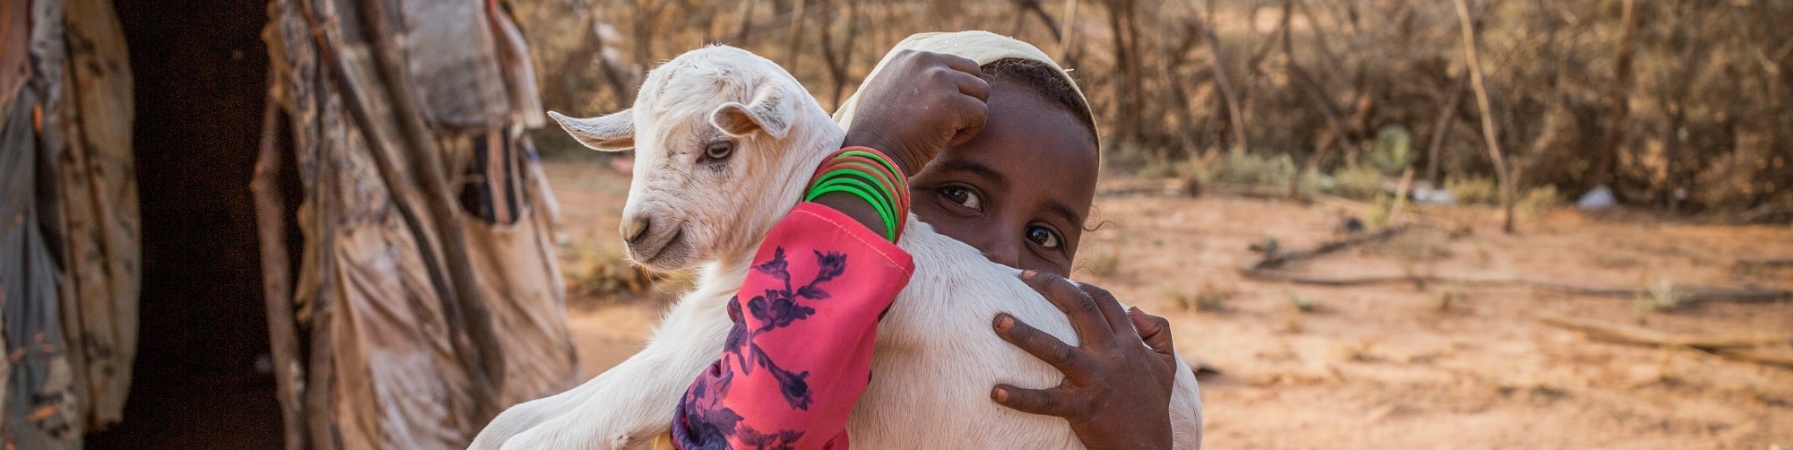 bimba somala con belo bianco e vestito lungo colorato con in braccio una capretta bianca fuori dalla sua abitazione in una zona semi desertica 